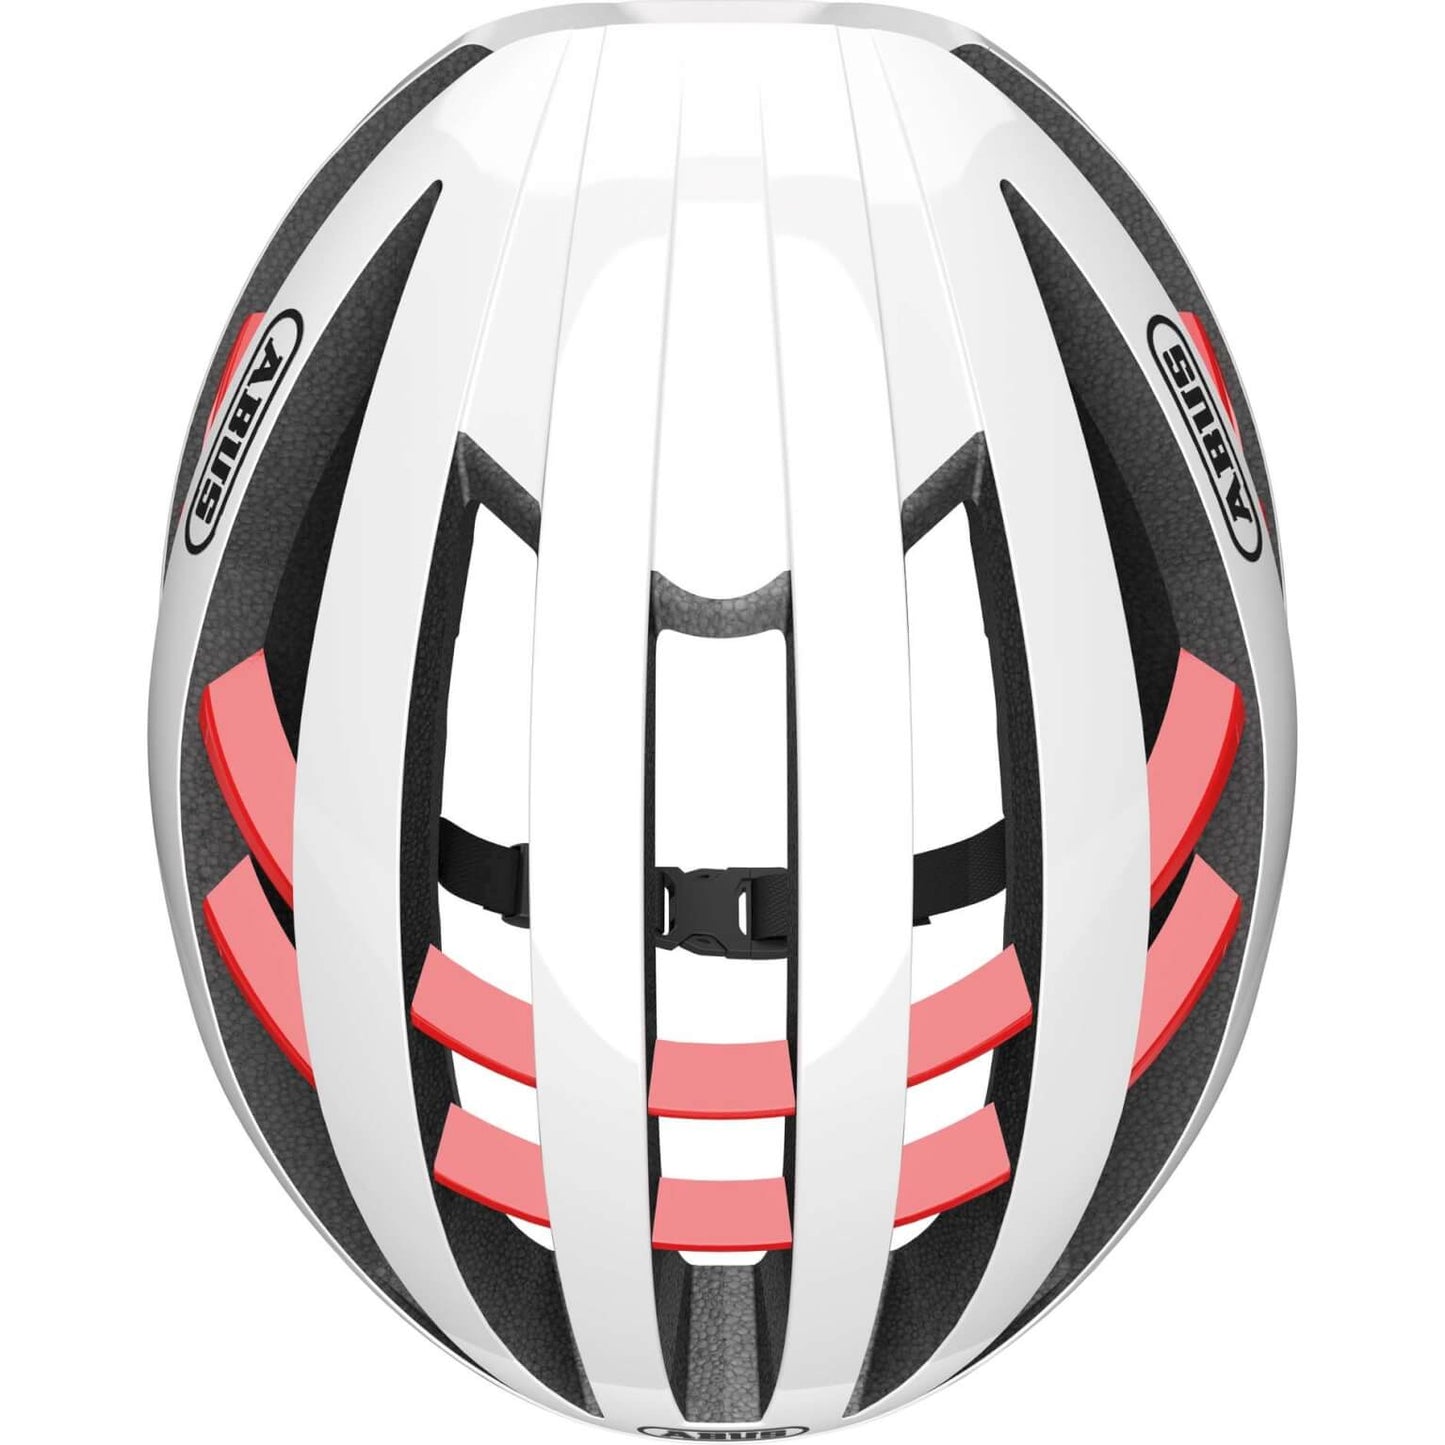 ABUS Helmet Aventgoud Quin Polar White M 54-58 cm